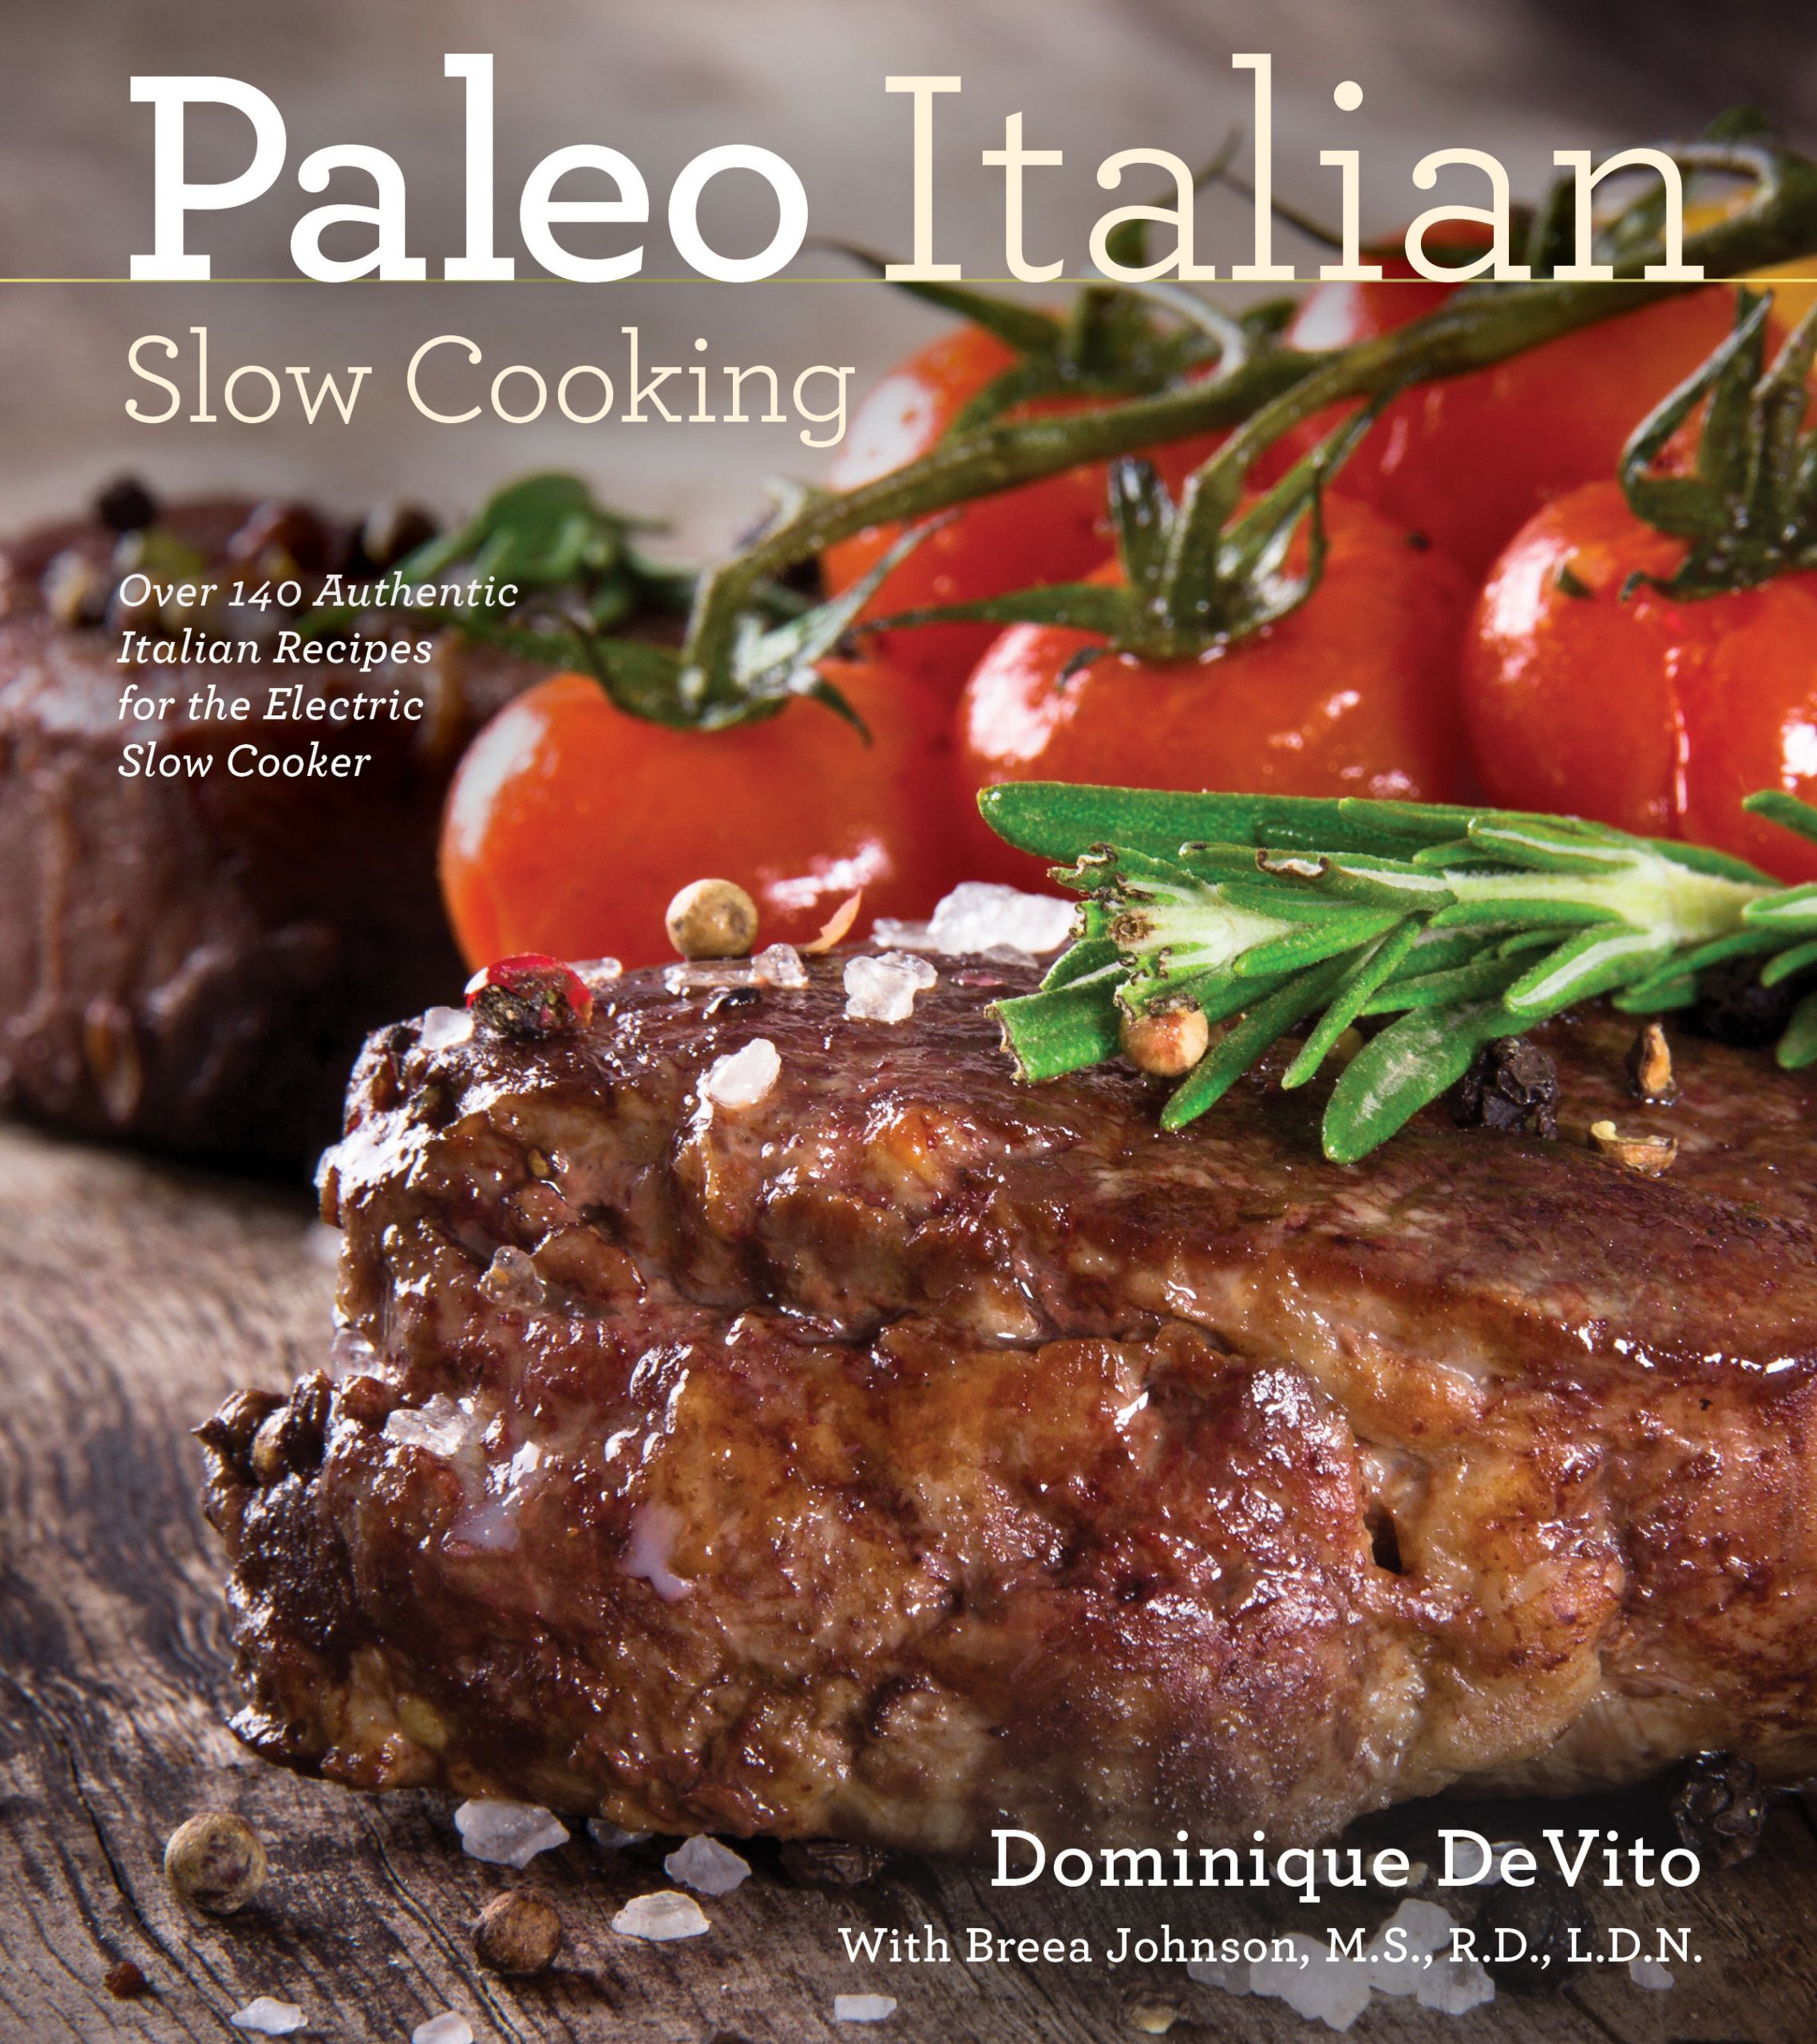 Paleo Italian Recipes
 Paleo Italian Slow Cooking